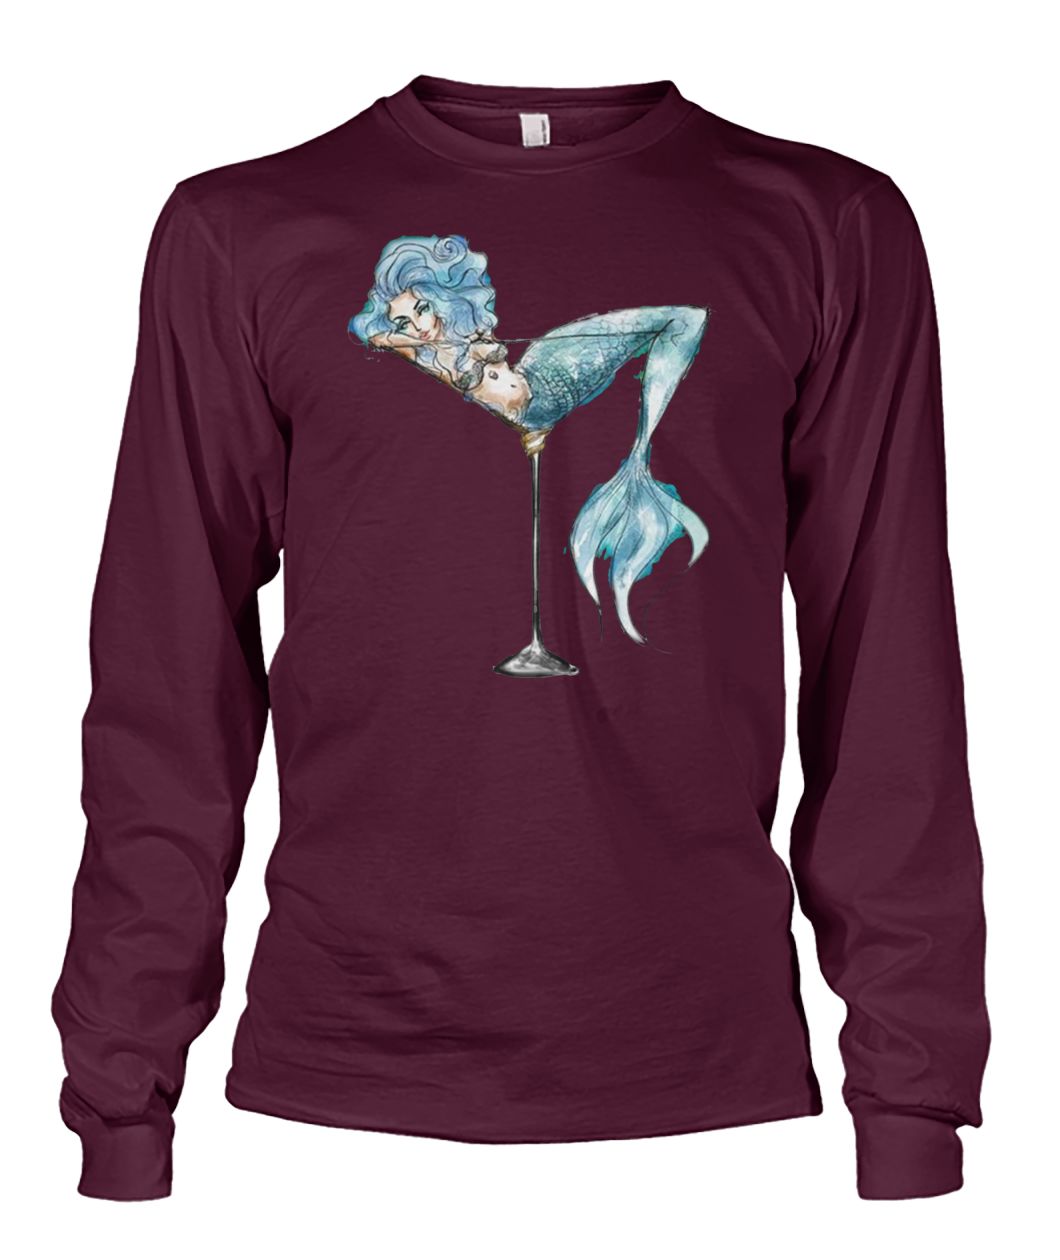 Martini mermaid unisex long sleeve